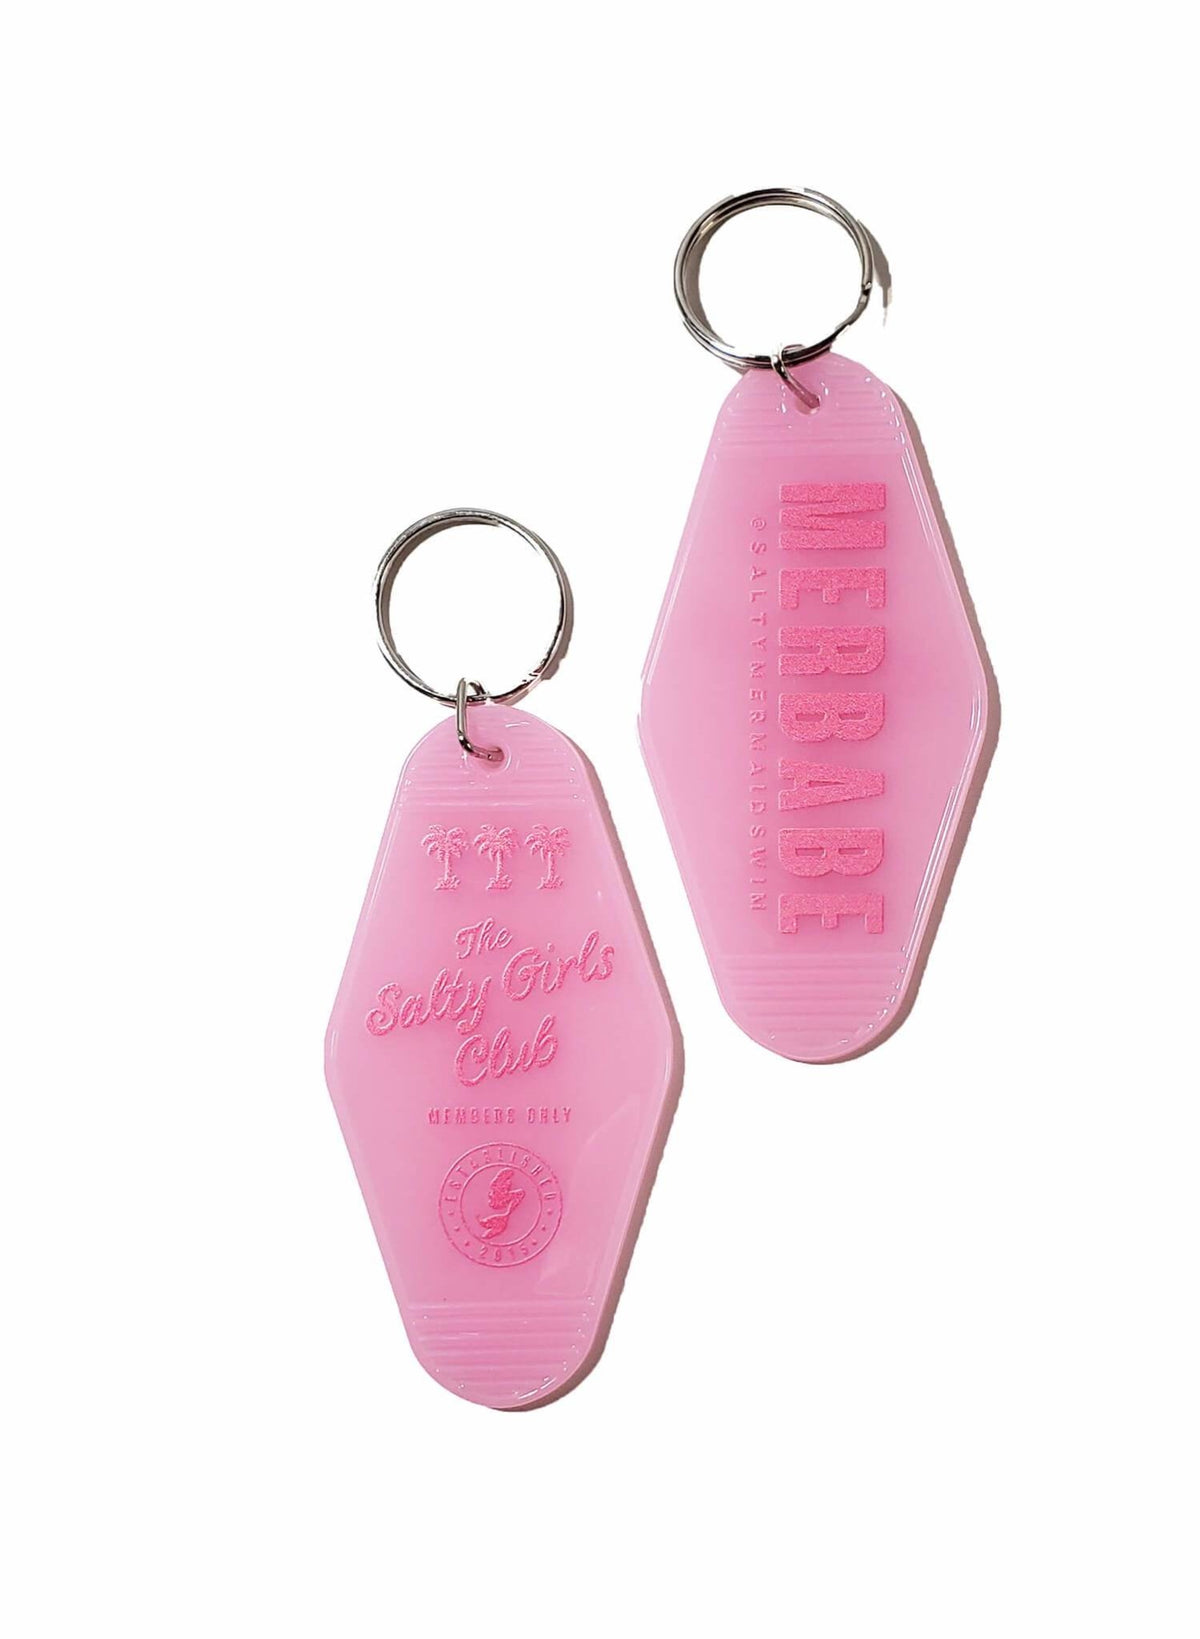 Merbabe Keychain - Pink - 50% Off!